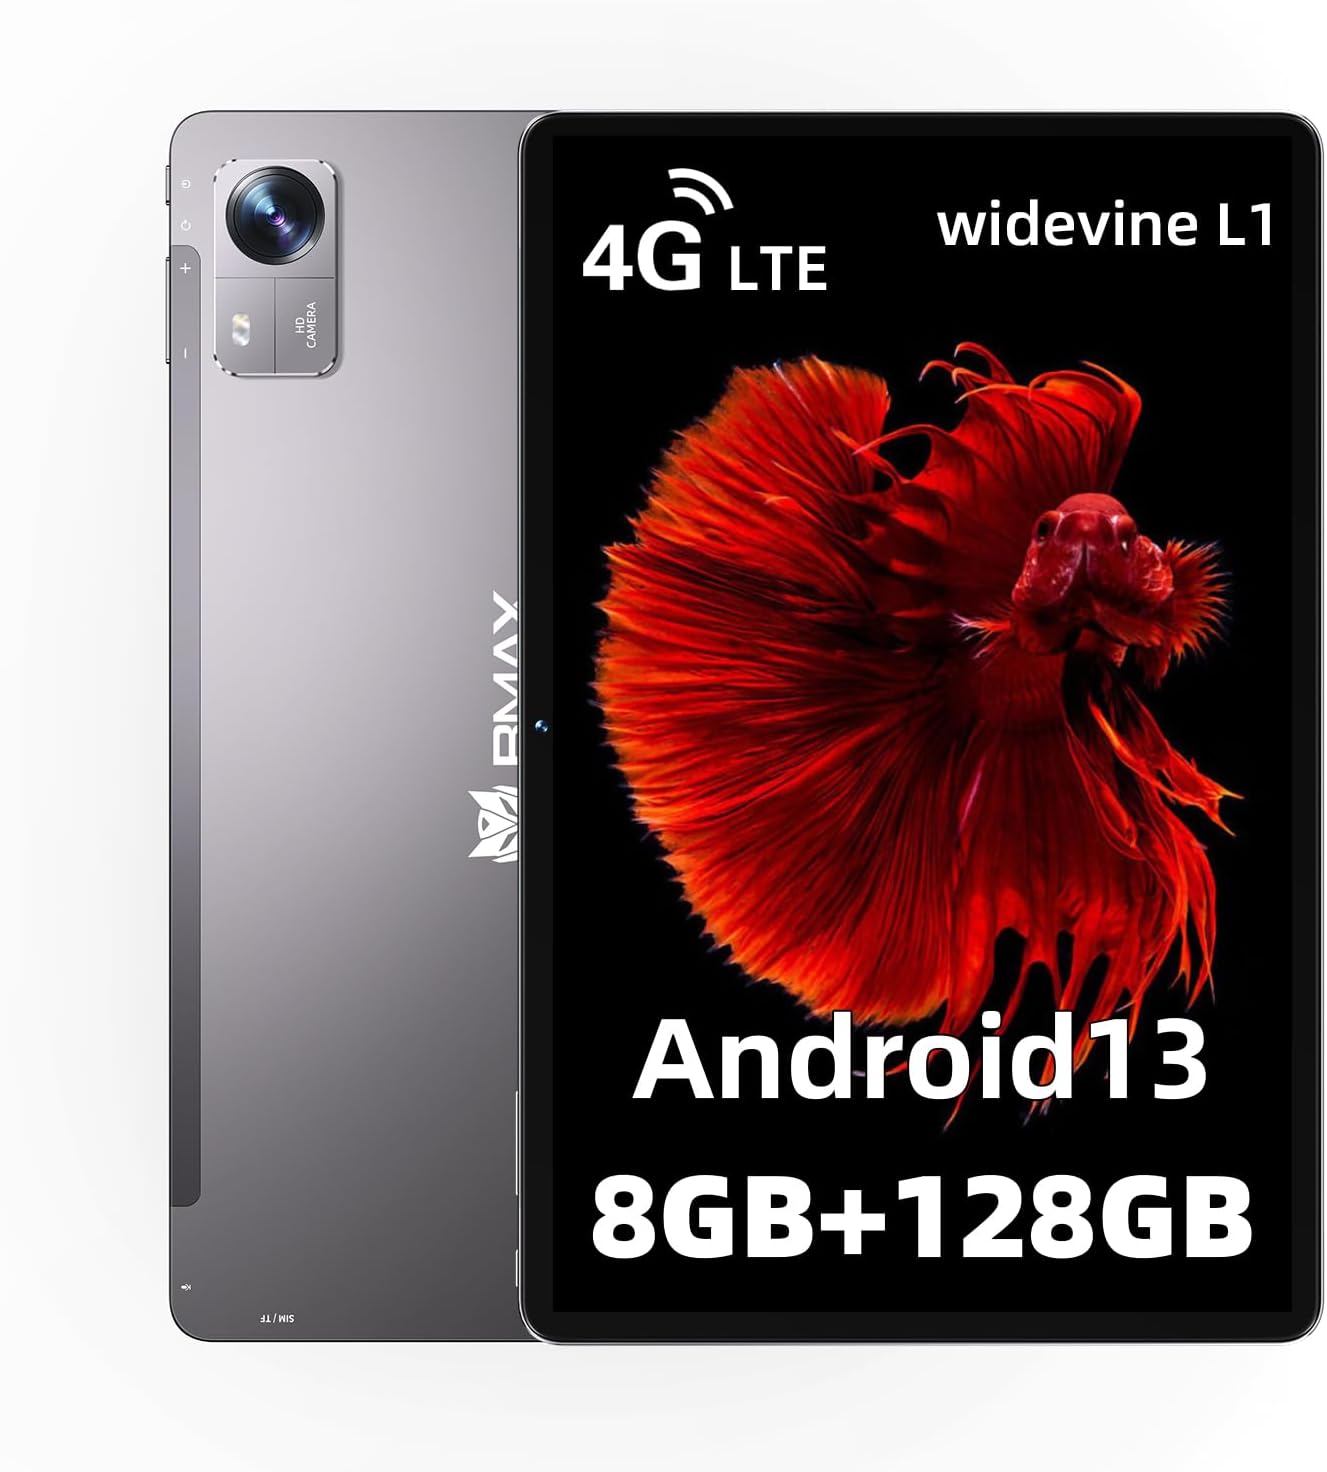 タブレット Android13 タブレット I10Pro T606 タブレット 10インチ 8GB(4GB+4GB)RAM+ 128GB+1TB 拡張 8コアCPU In-Cellディスプレイ 1280*800解像度IPS 7000mAh大容量バッテリー デュアルスピーカー 5MP/13MPカメラ LTE通信可能+顔認識